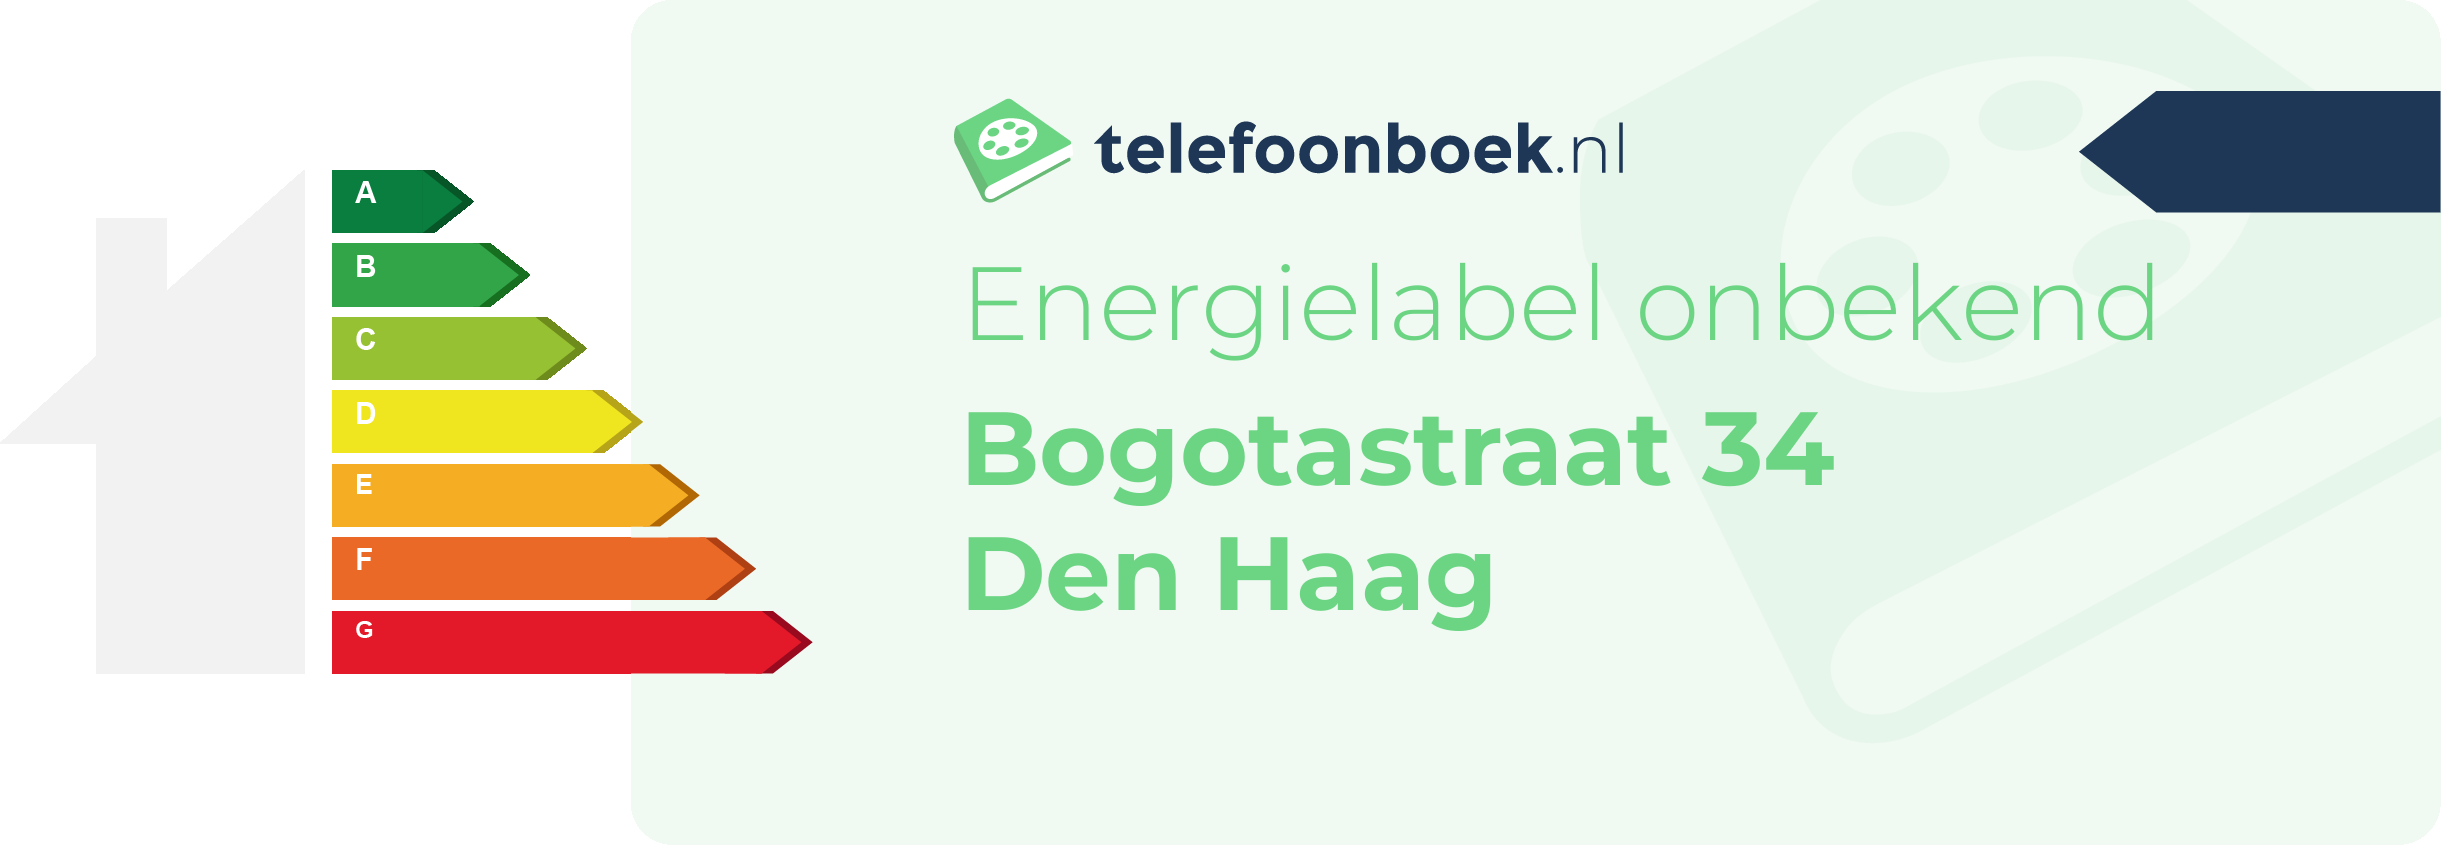 Energielabel Bogotastraat 34 Den Haag